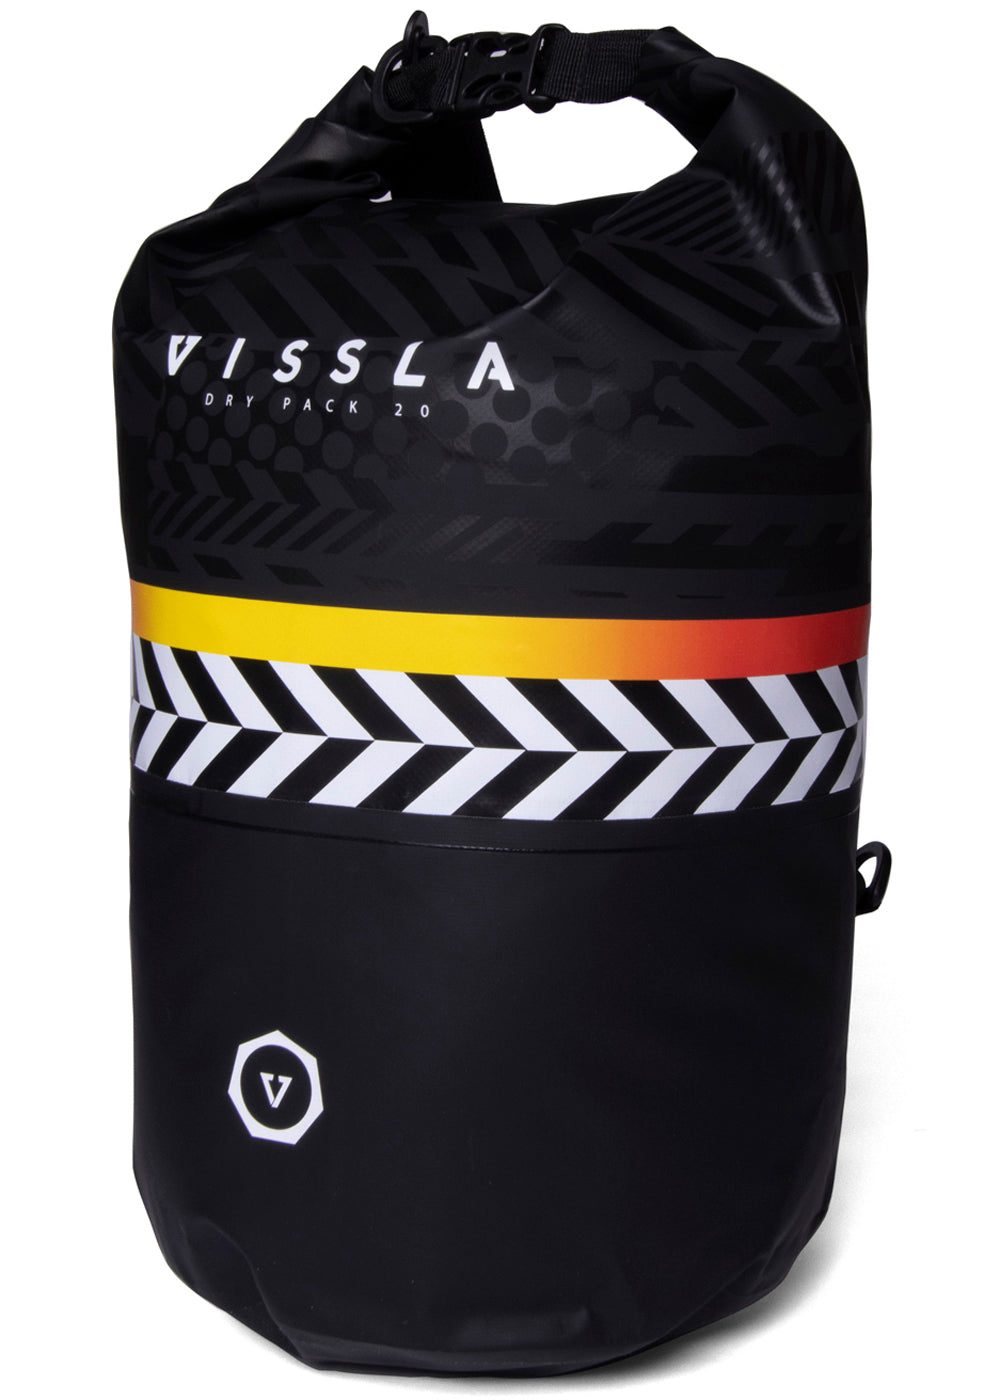 Vissla 7 Seas Dry Pack 20L - Black profile 2